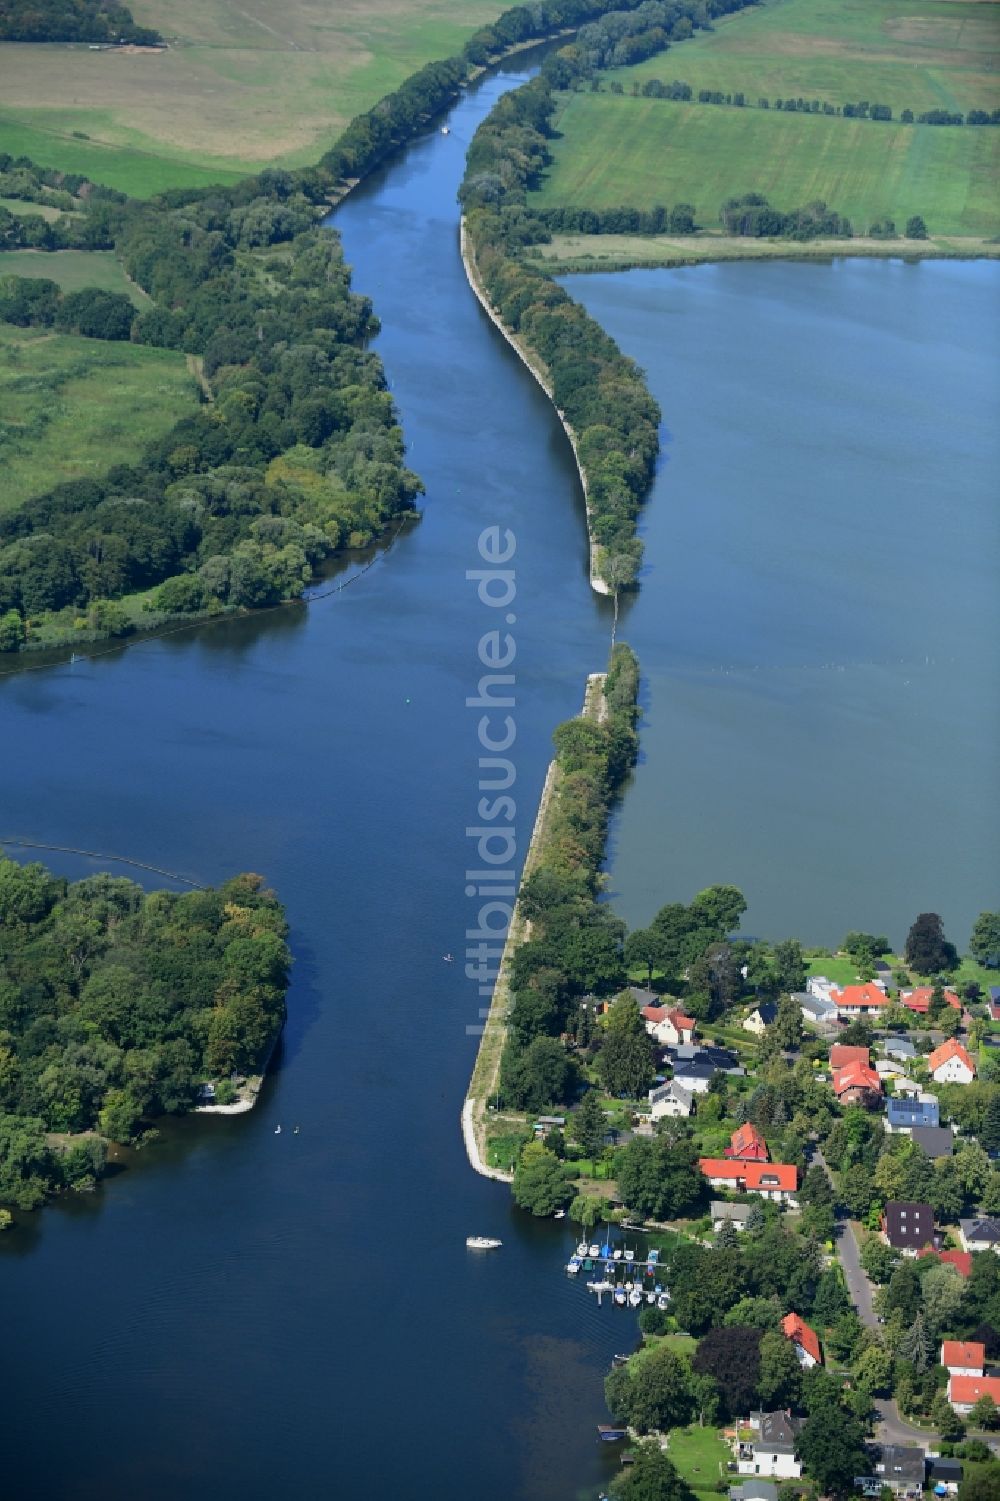 Luftbild Neu Fahrland - Kanalverlauf und Uferbereiche der Wasserstraße der Binnenschiffahrt an der Landzunge am Sacrow-Paretzer Kanal in Neu Fahrland im Bundesland Brandenburg, Deutschland